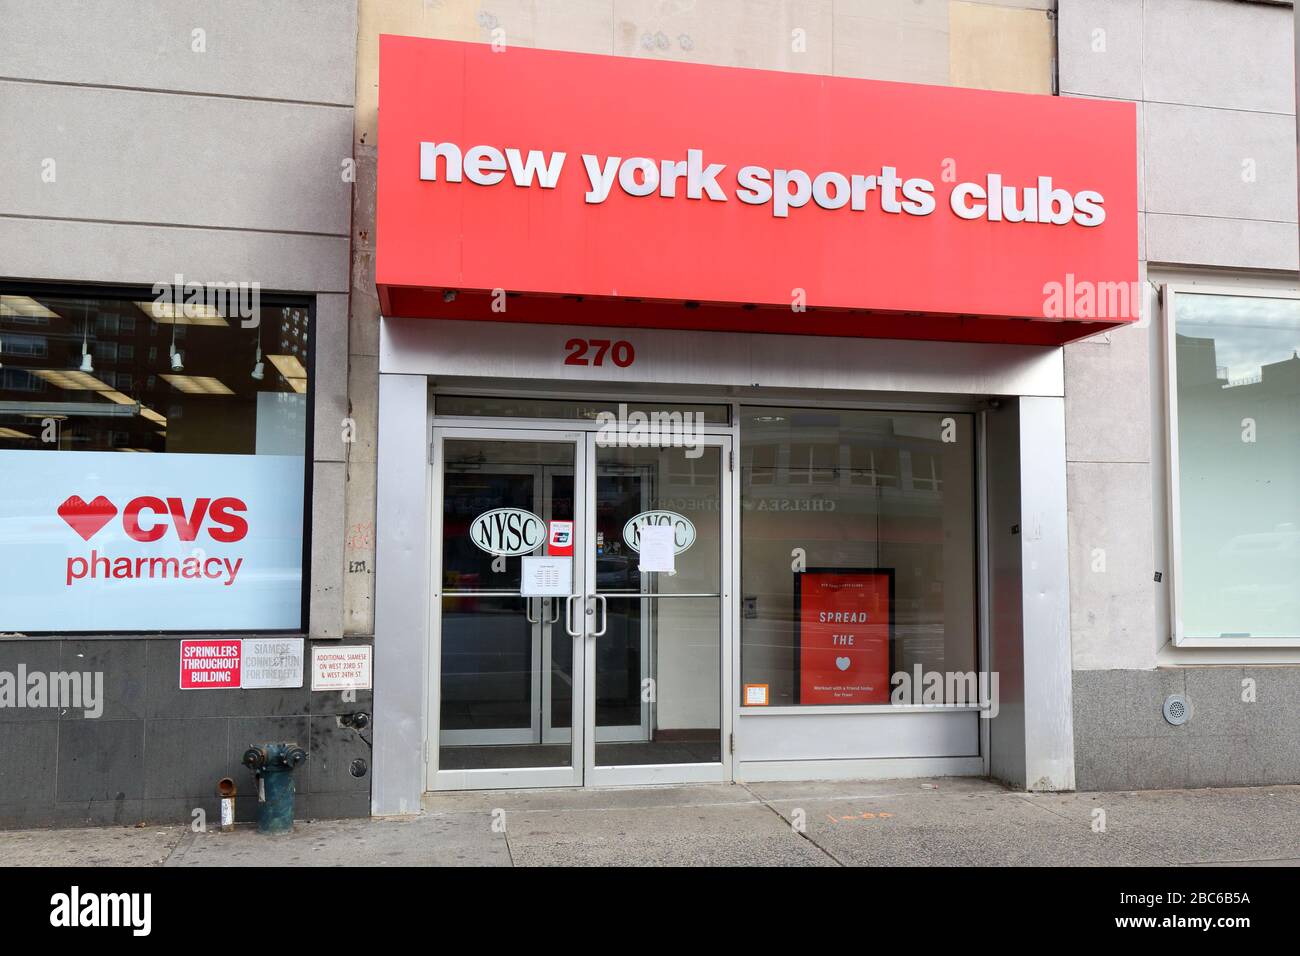 New York Sports Clubs, 270 8. Ave, New York, NYC Foto von einem Fitnessstudio im Chelsea-Viertel von Manhattan. Stockfoto